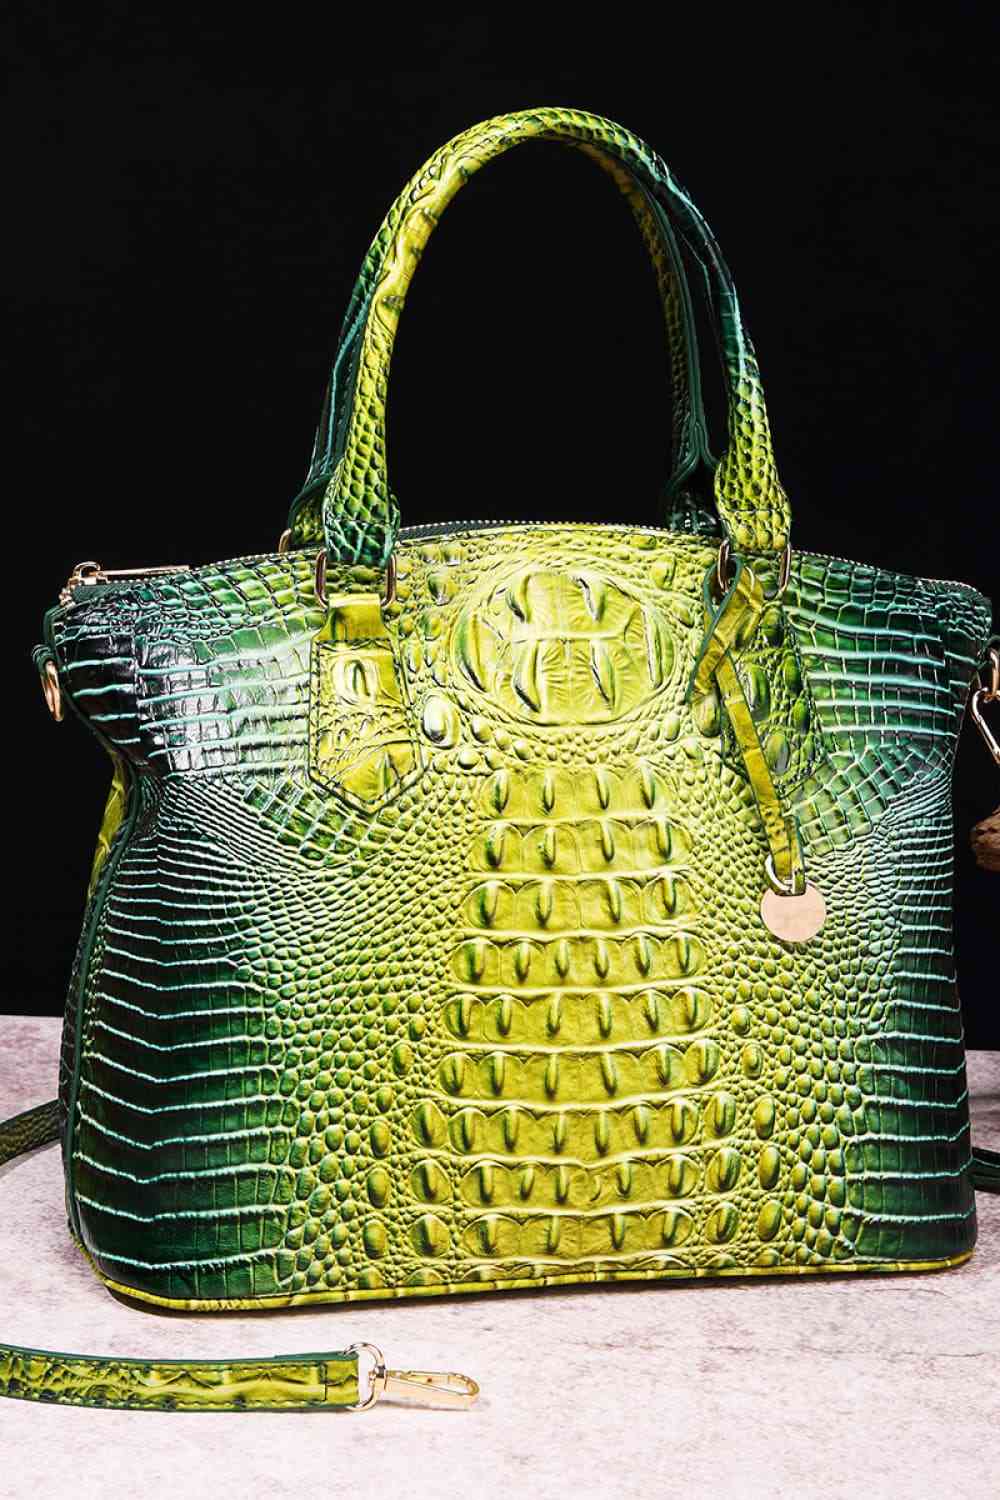 TEEK - Gradient Style Scheduler Handbag BAG TEEK Trend Yellow/Green  